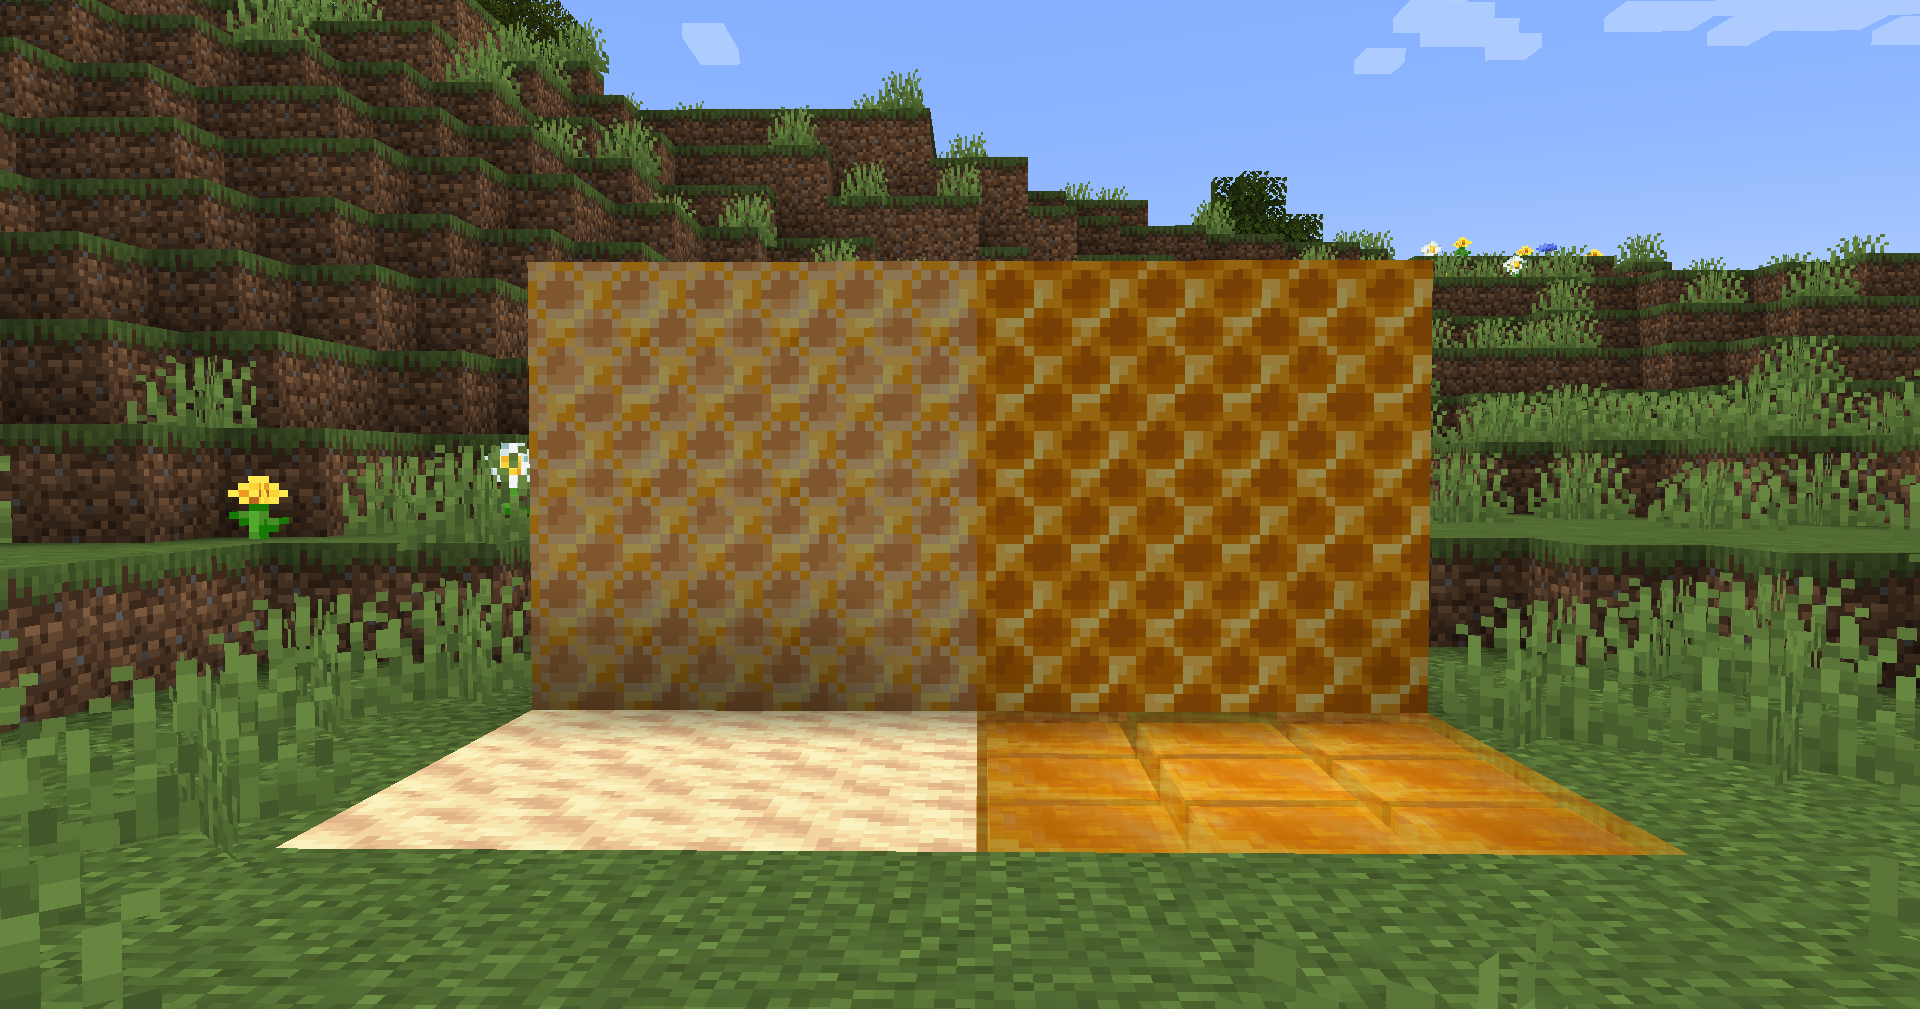 Empty Honeycomb